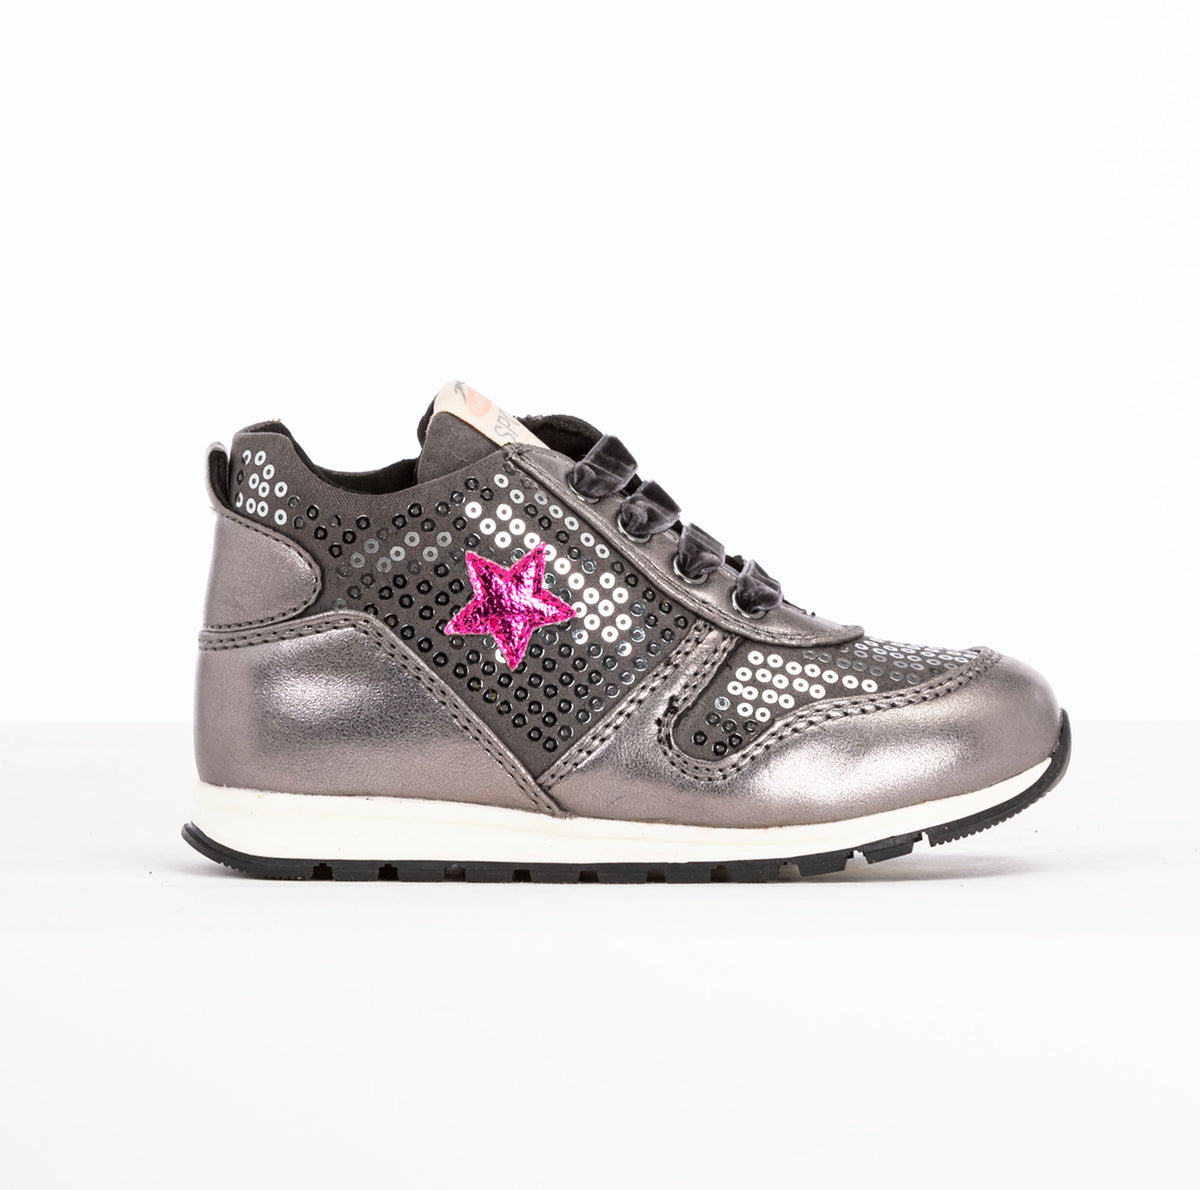 BALDUCCI | Sneakers Bambina | 69980